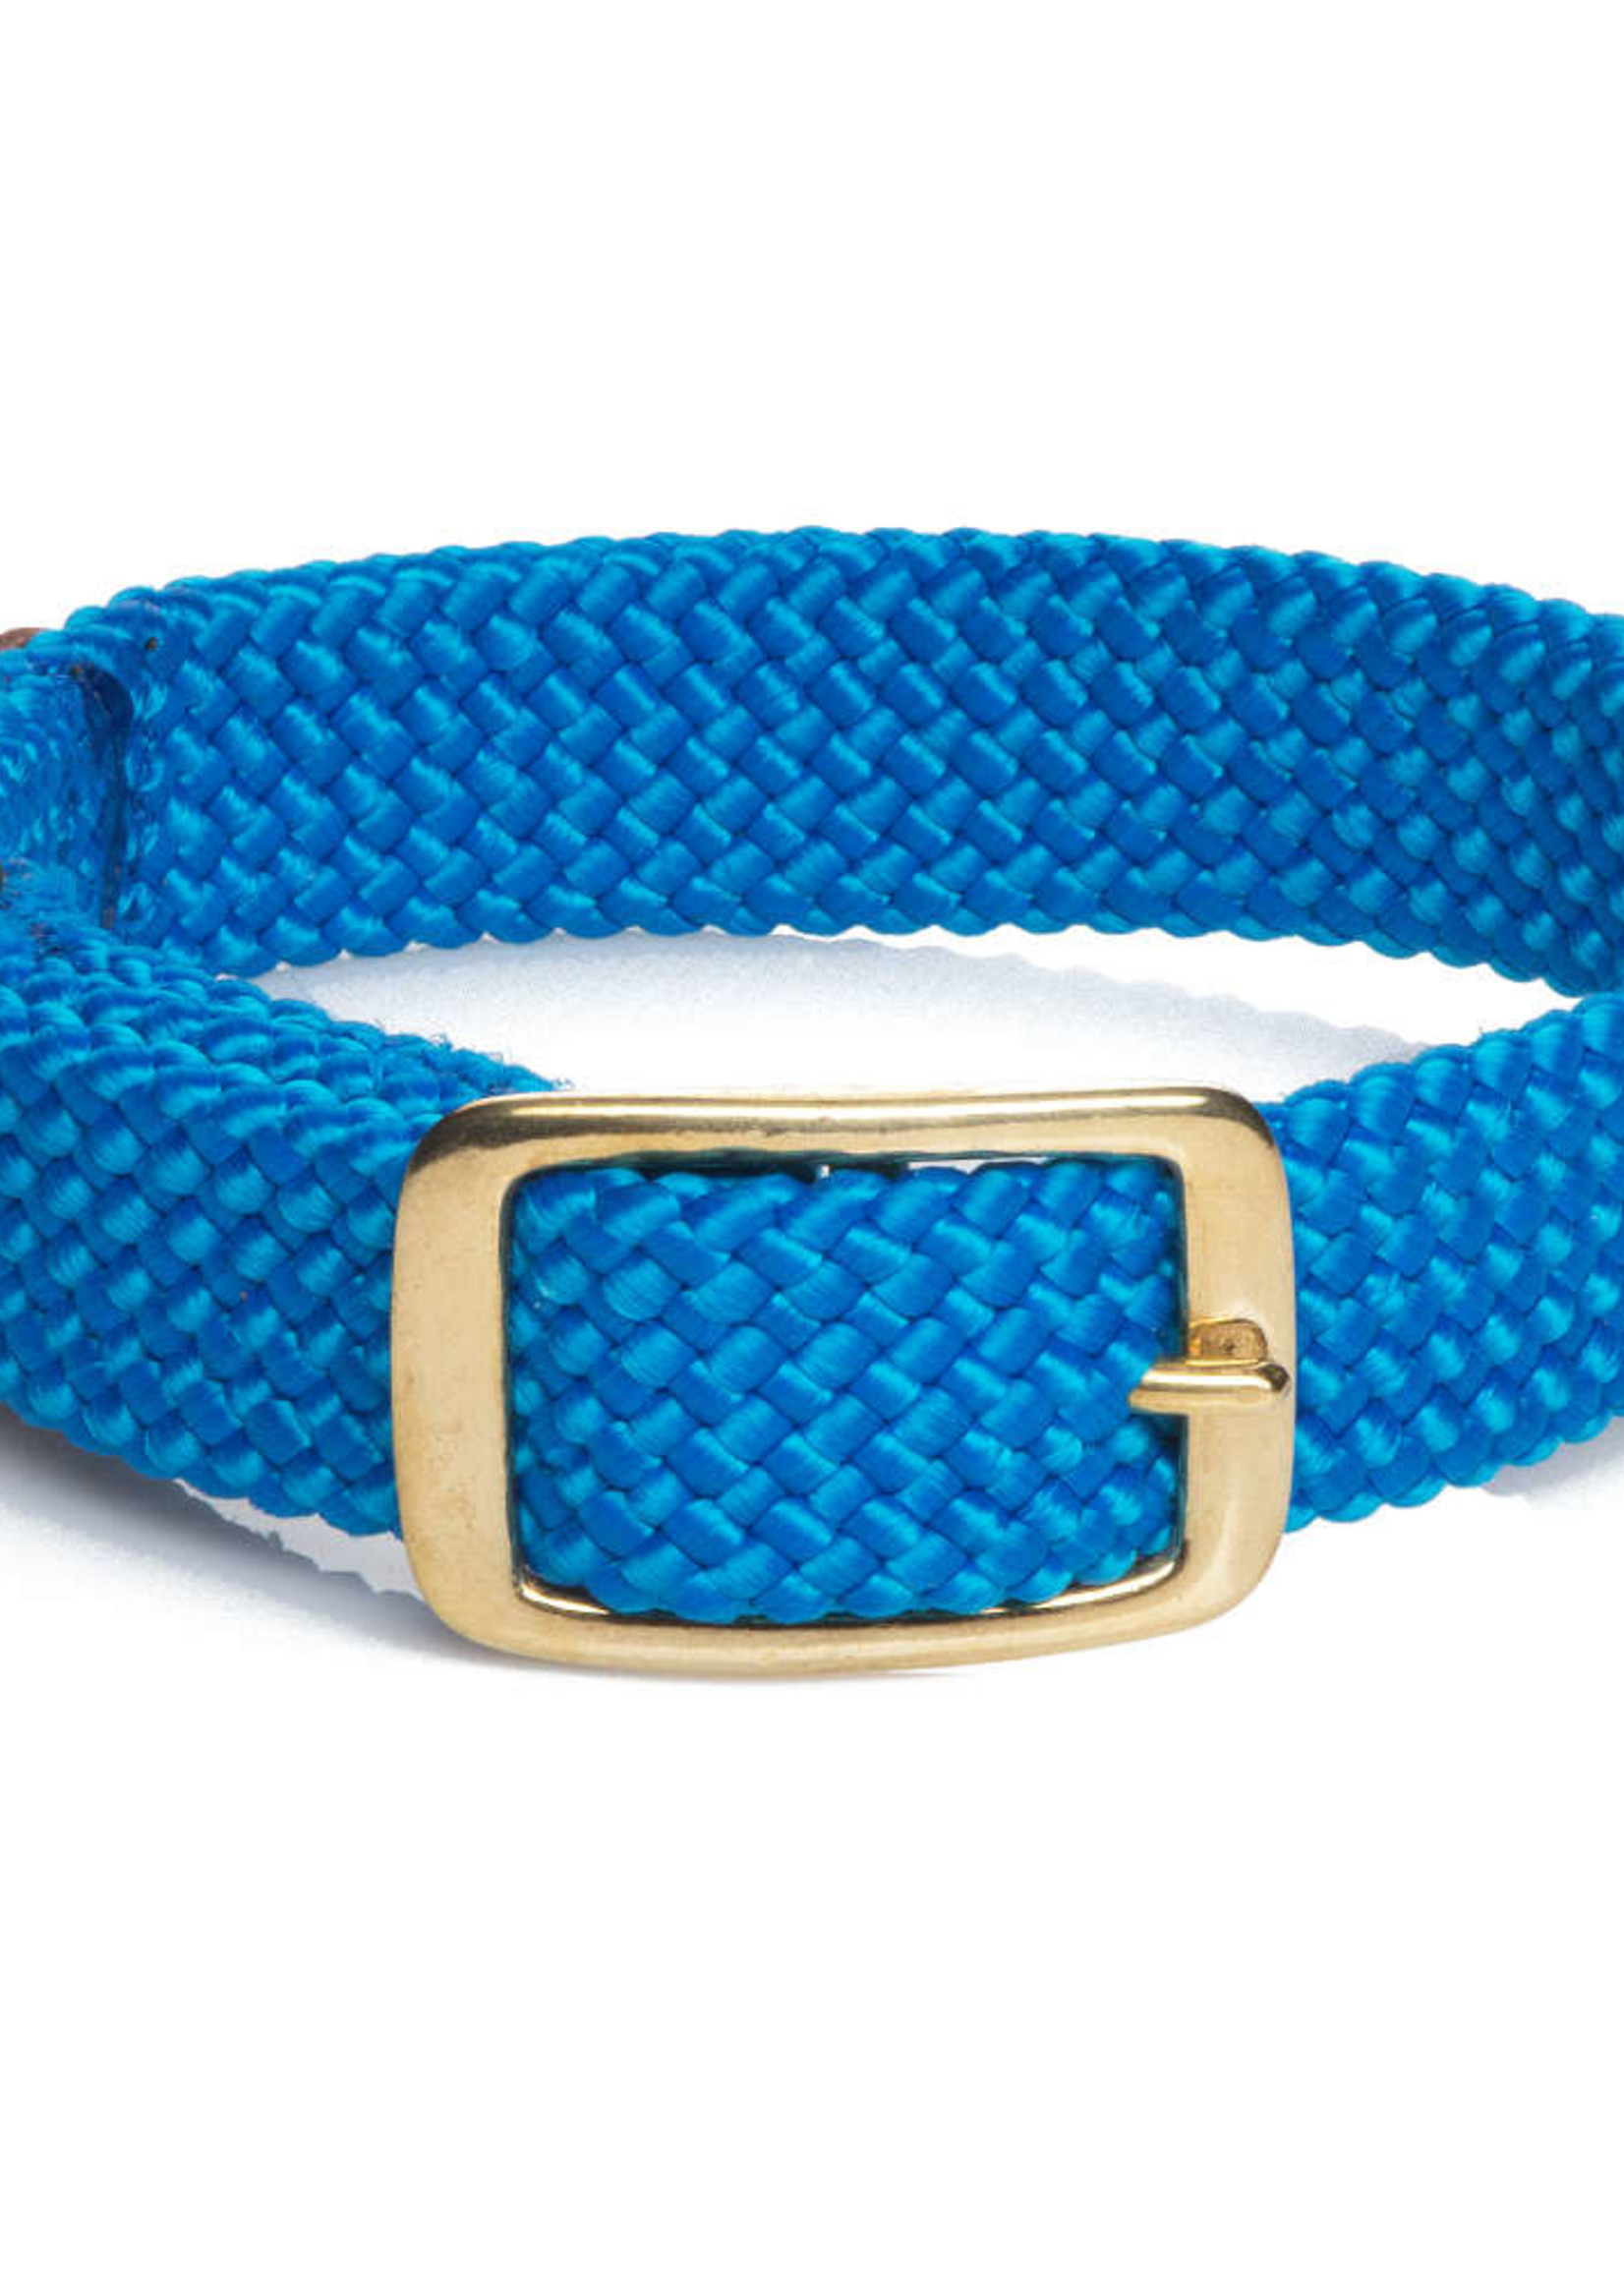 Mendota Mendota Double-Braid Collar BLUE 1"x24"